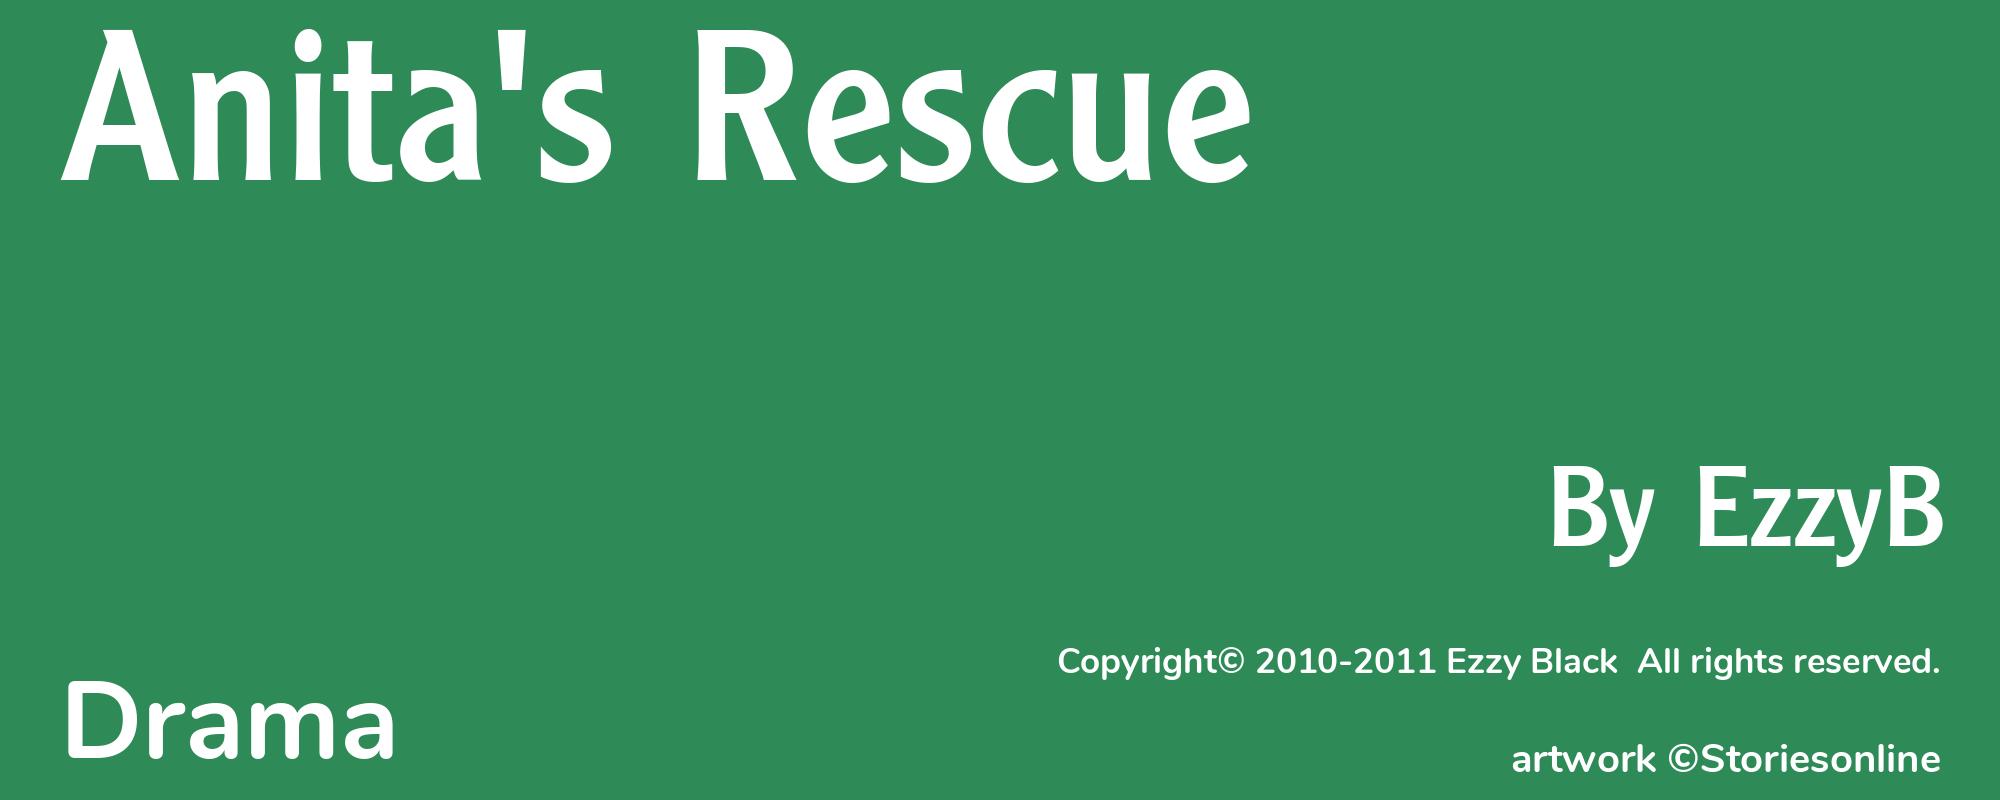 Anita's Rescue - Cover